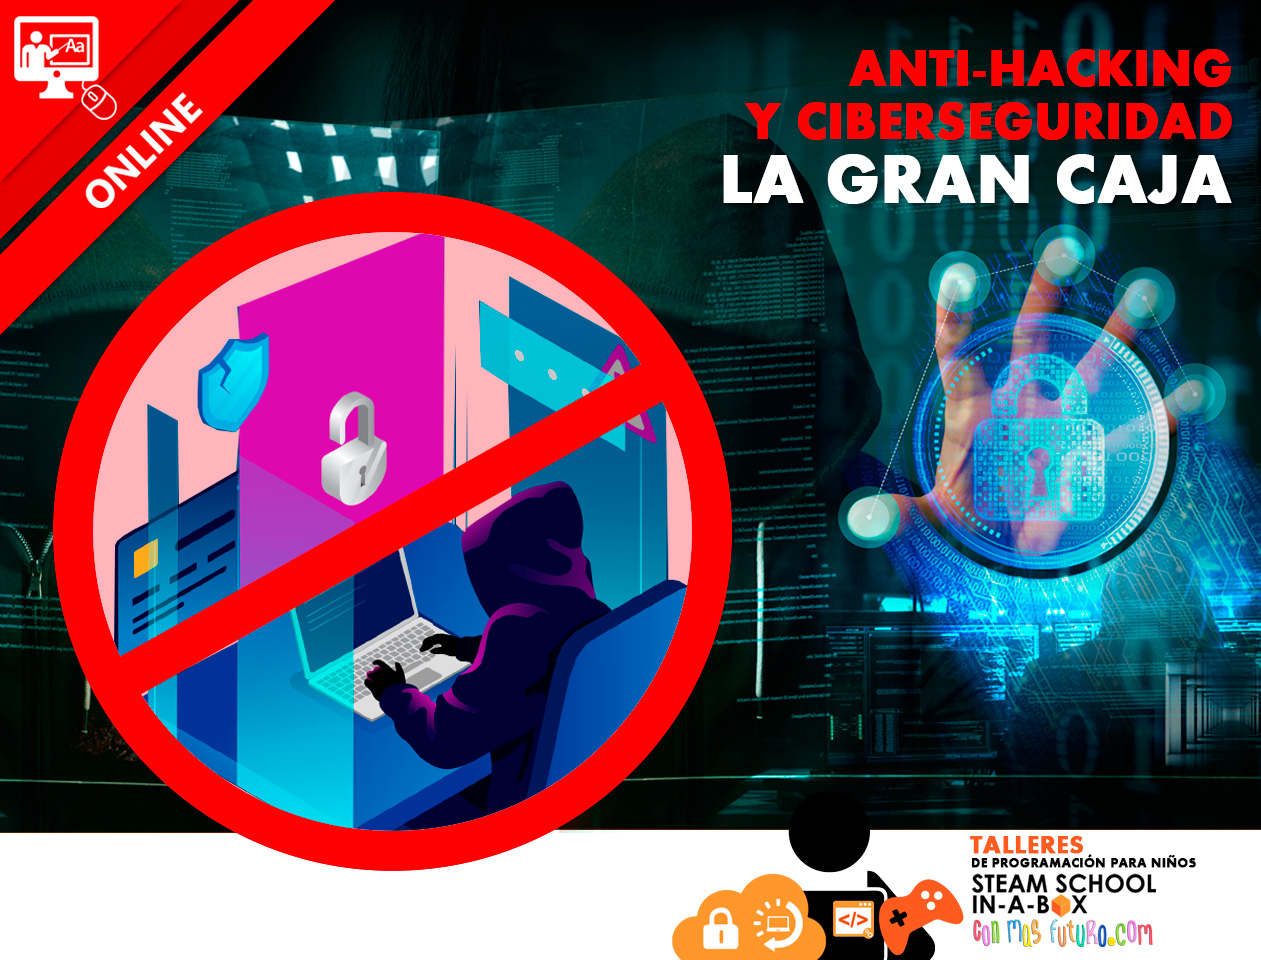 ANTI-HACKING Y CIBERSEGURIDAD: LA GRAN CAJA